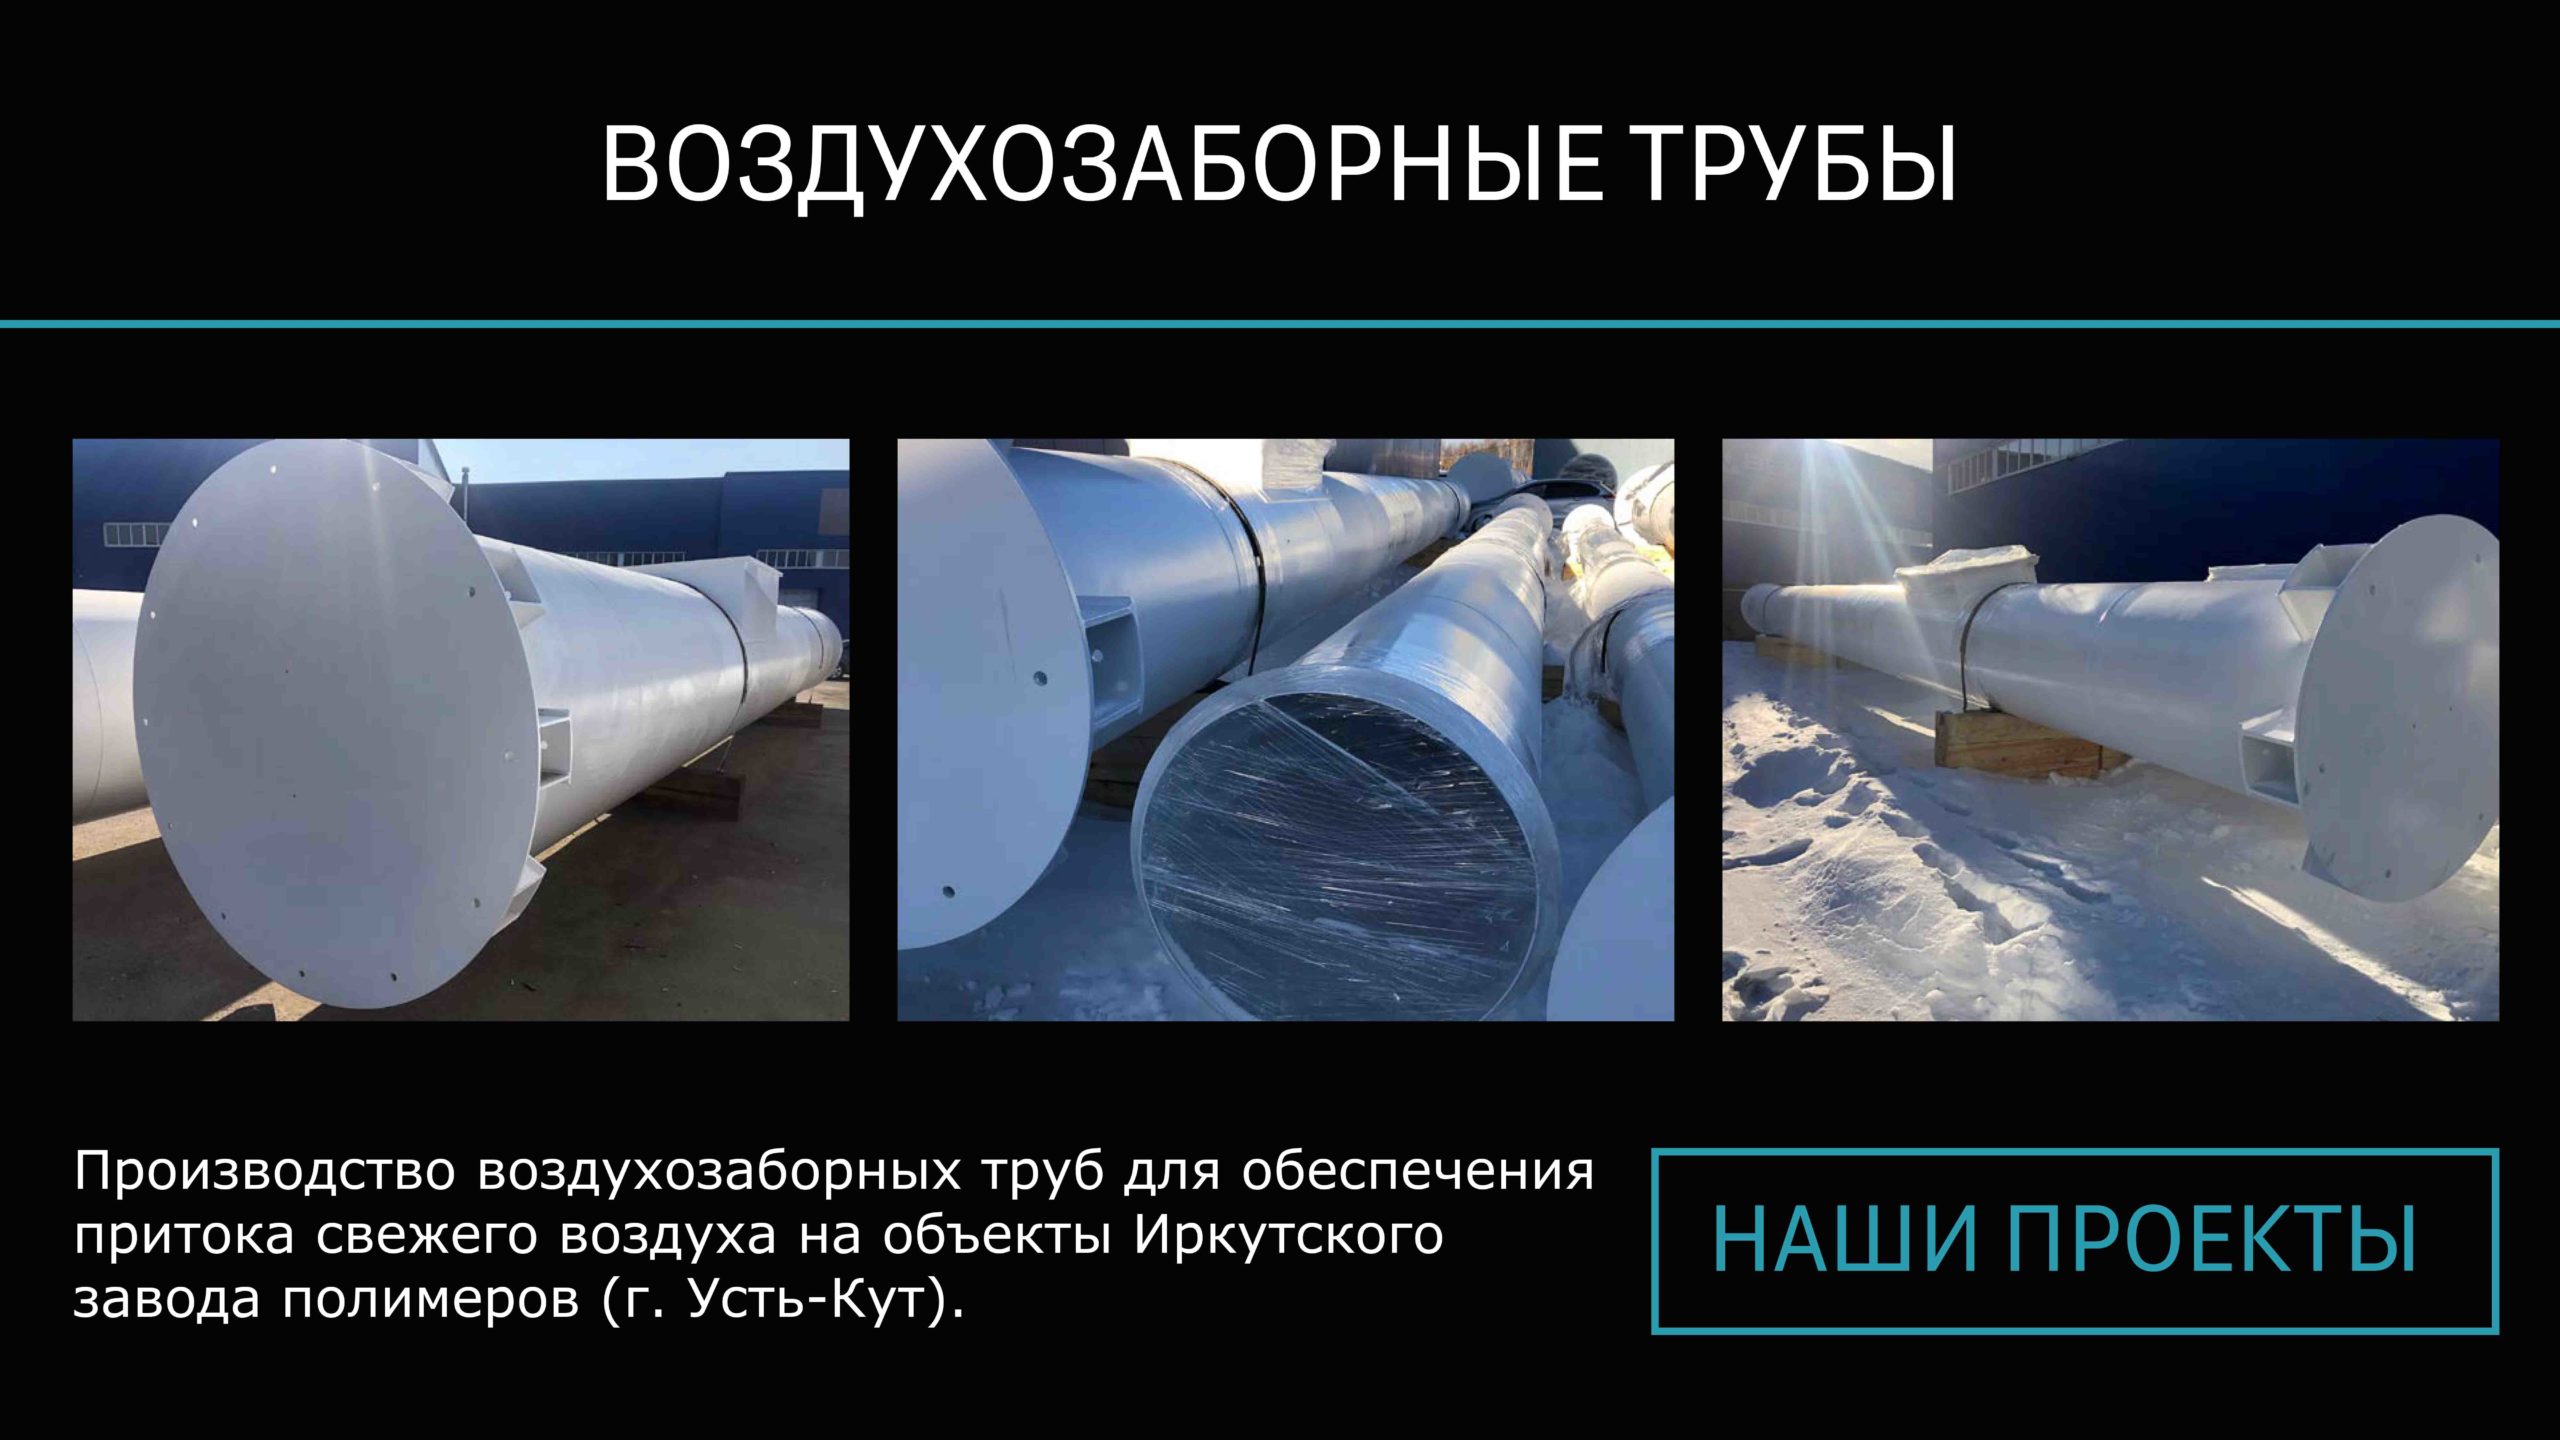 СТИЛСГРУПП - наши проекты - воздухозаборные трубы